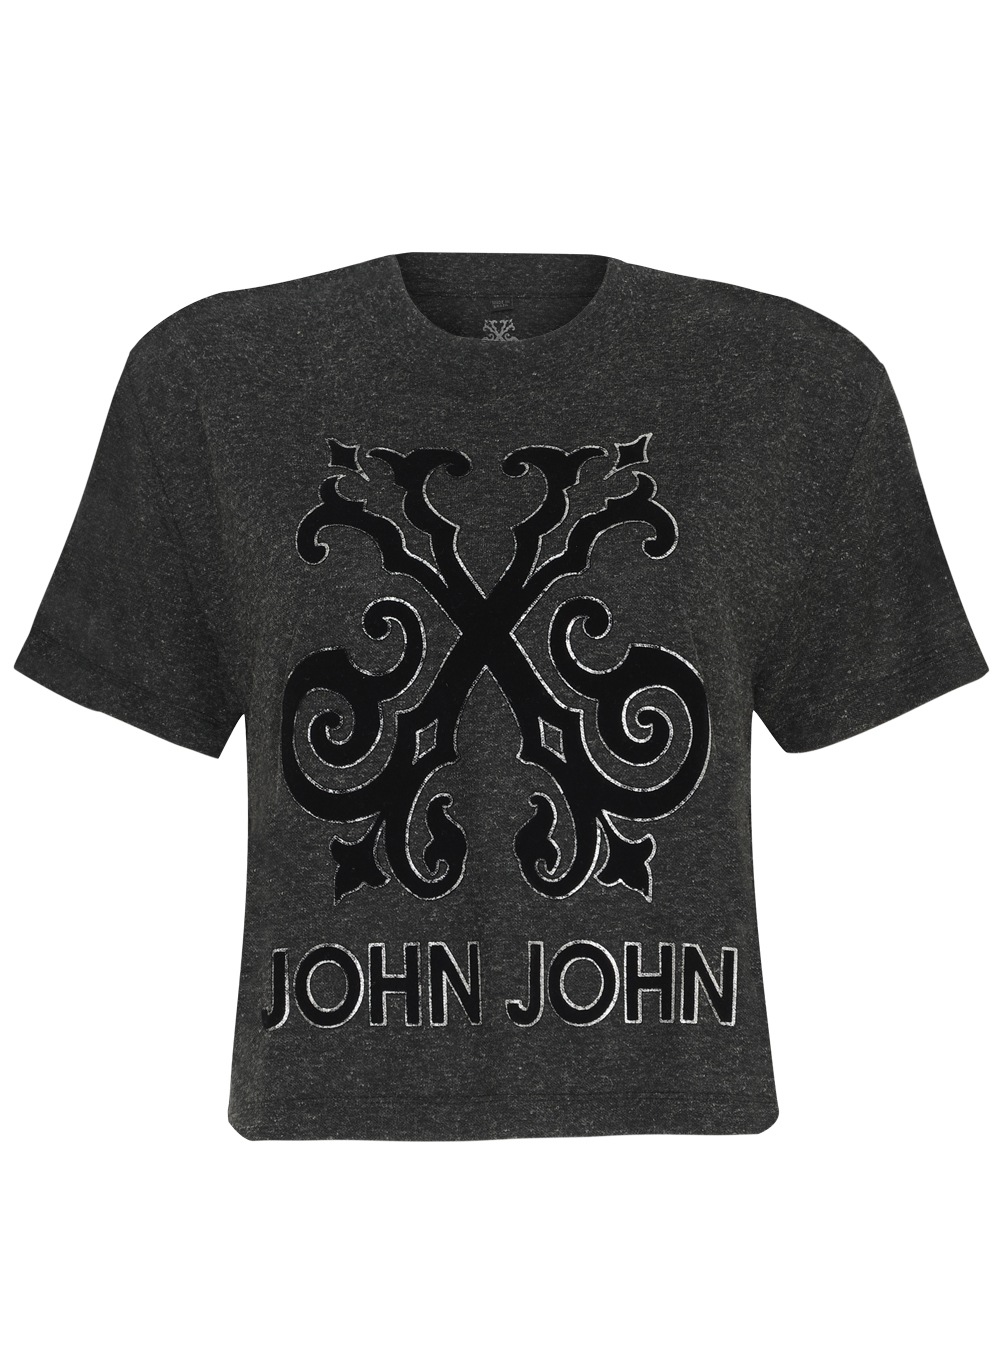 Camiseta Seatle John John Feminina 03.01.1228 - Camiseta Seatle